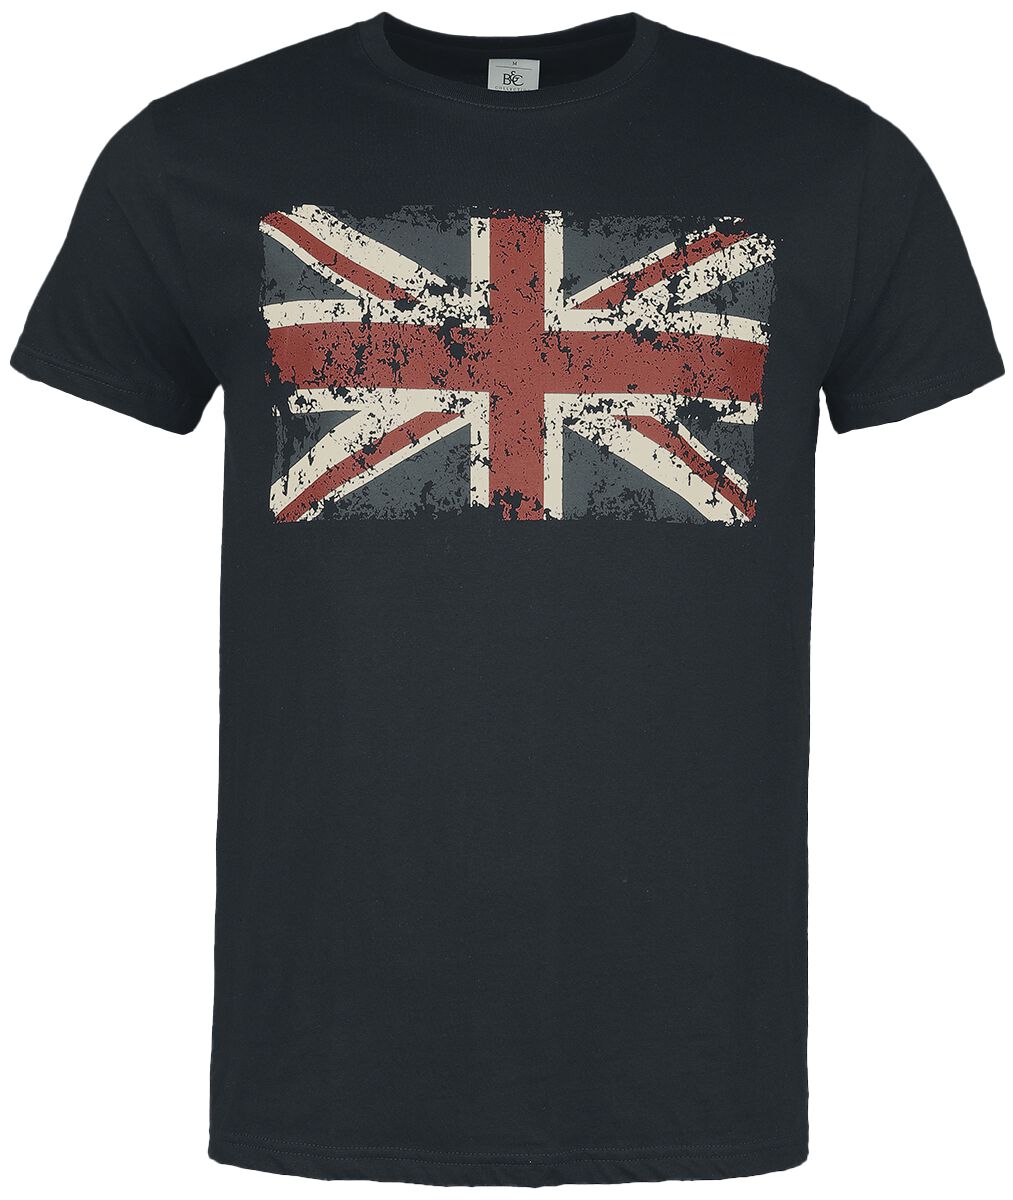 Gasoline Bandit - Rockabilly T-Shirt - Union Jack - S bis 4XL - für Männer - Größe XXL - schwarz